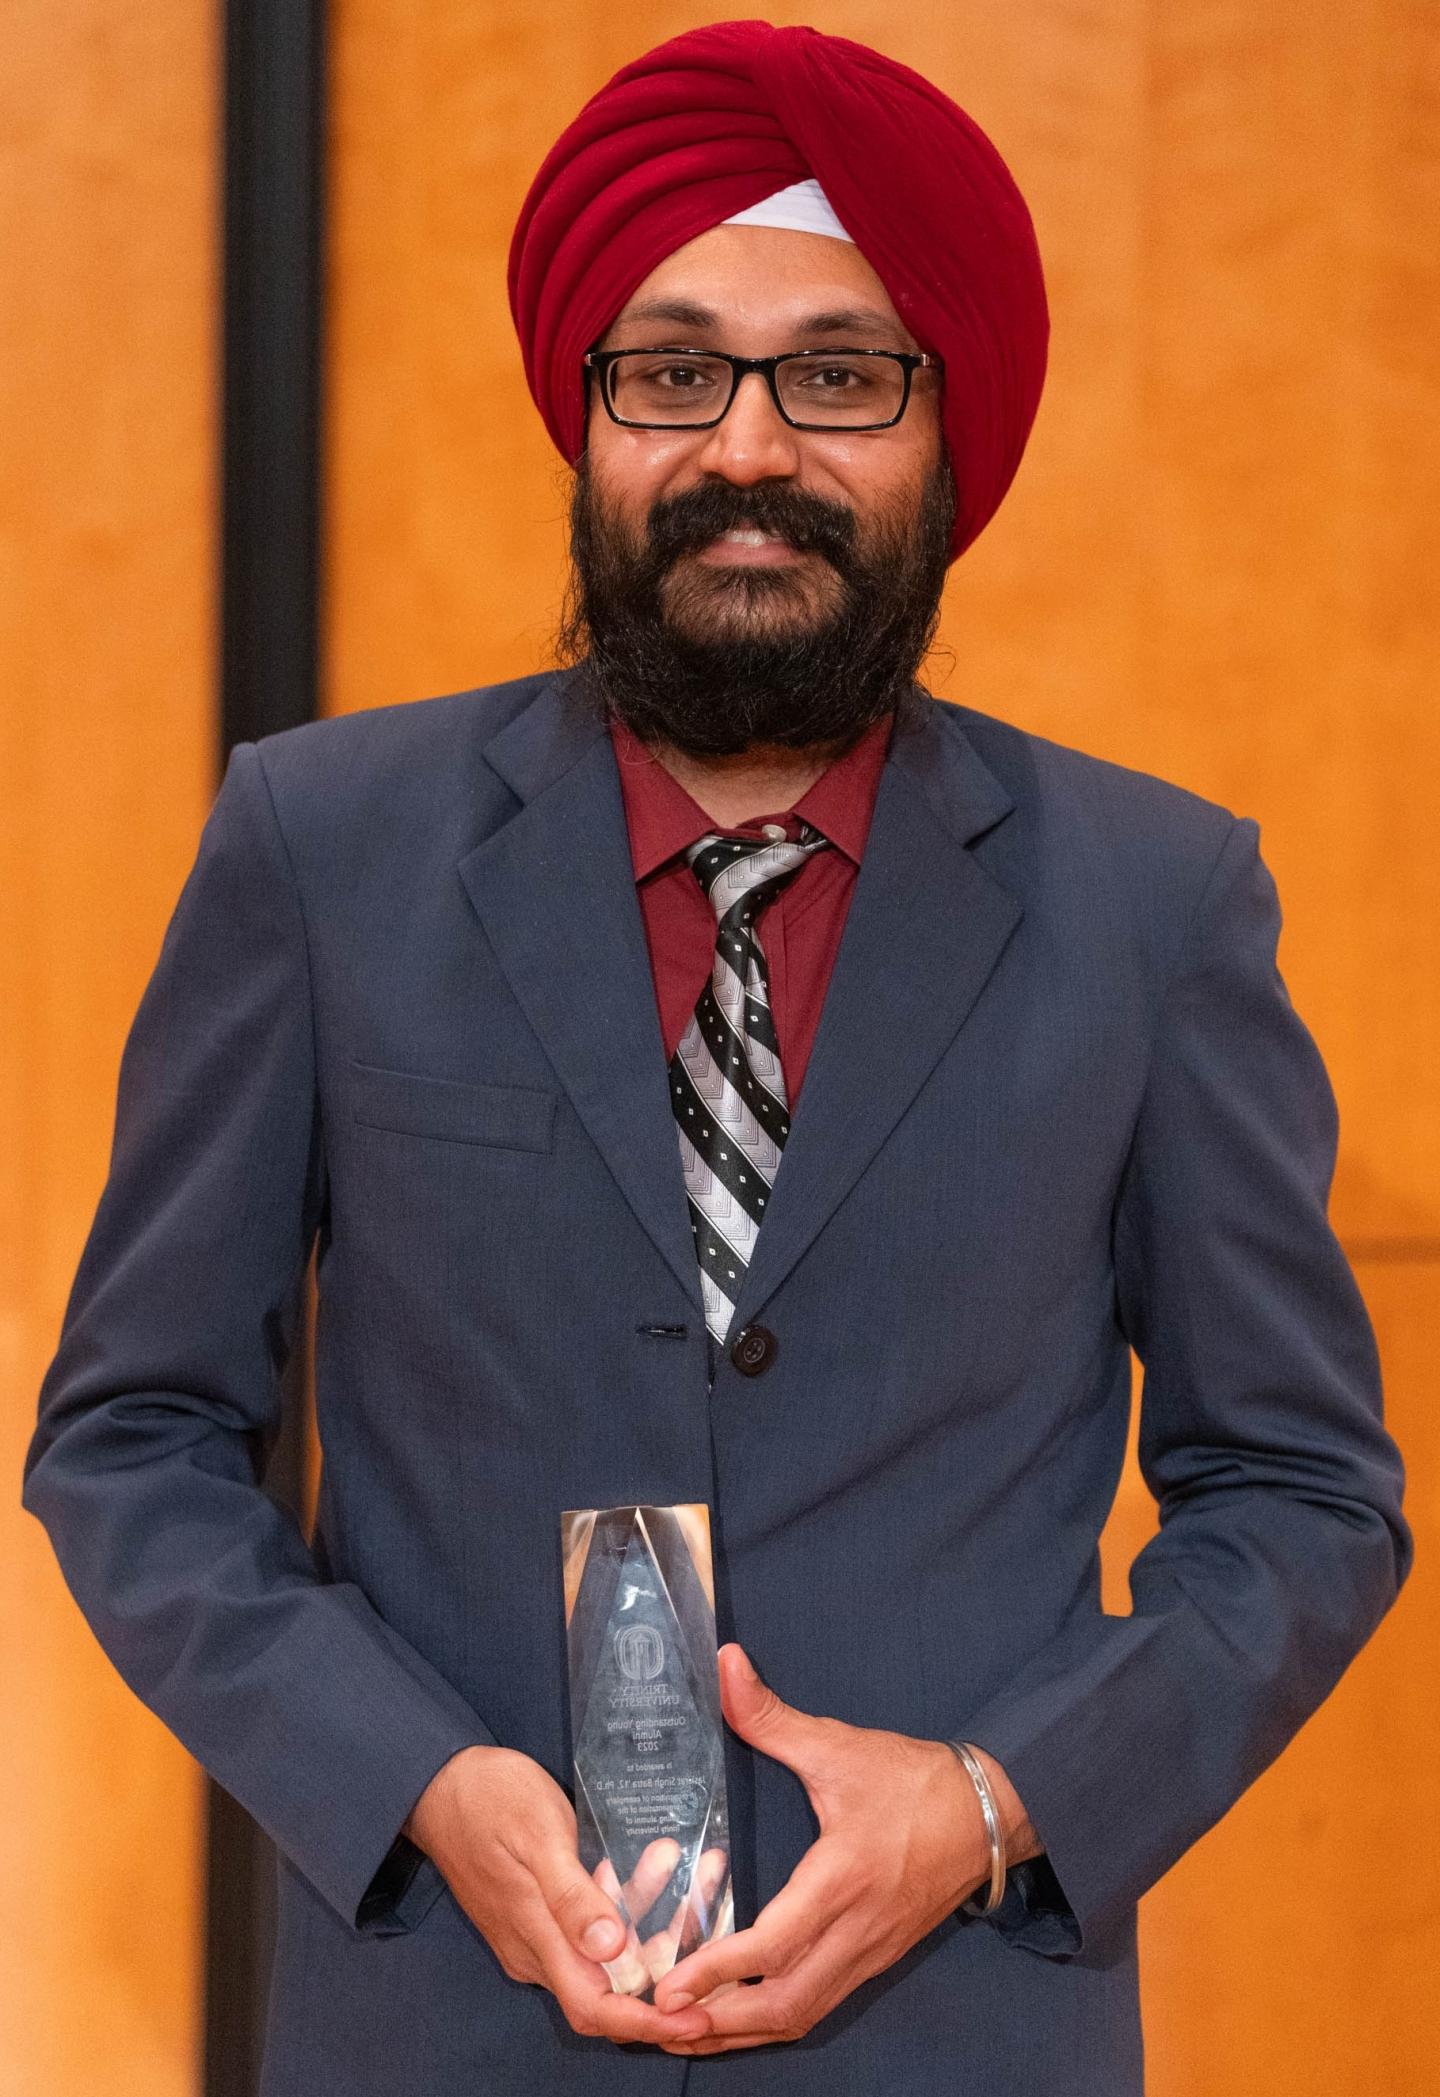 Photo of Jaskirat Singh Batra '12, Ph.D. holding an Alumni Award